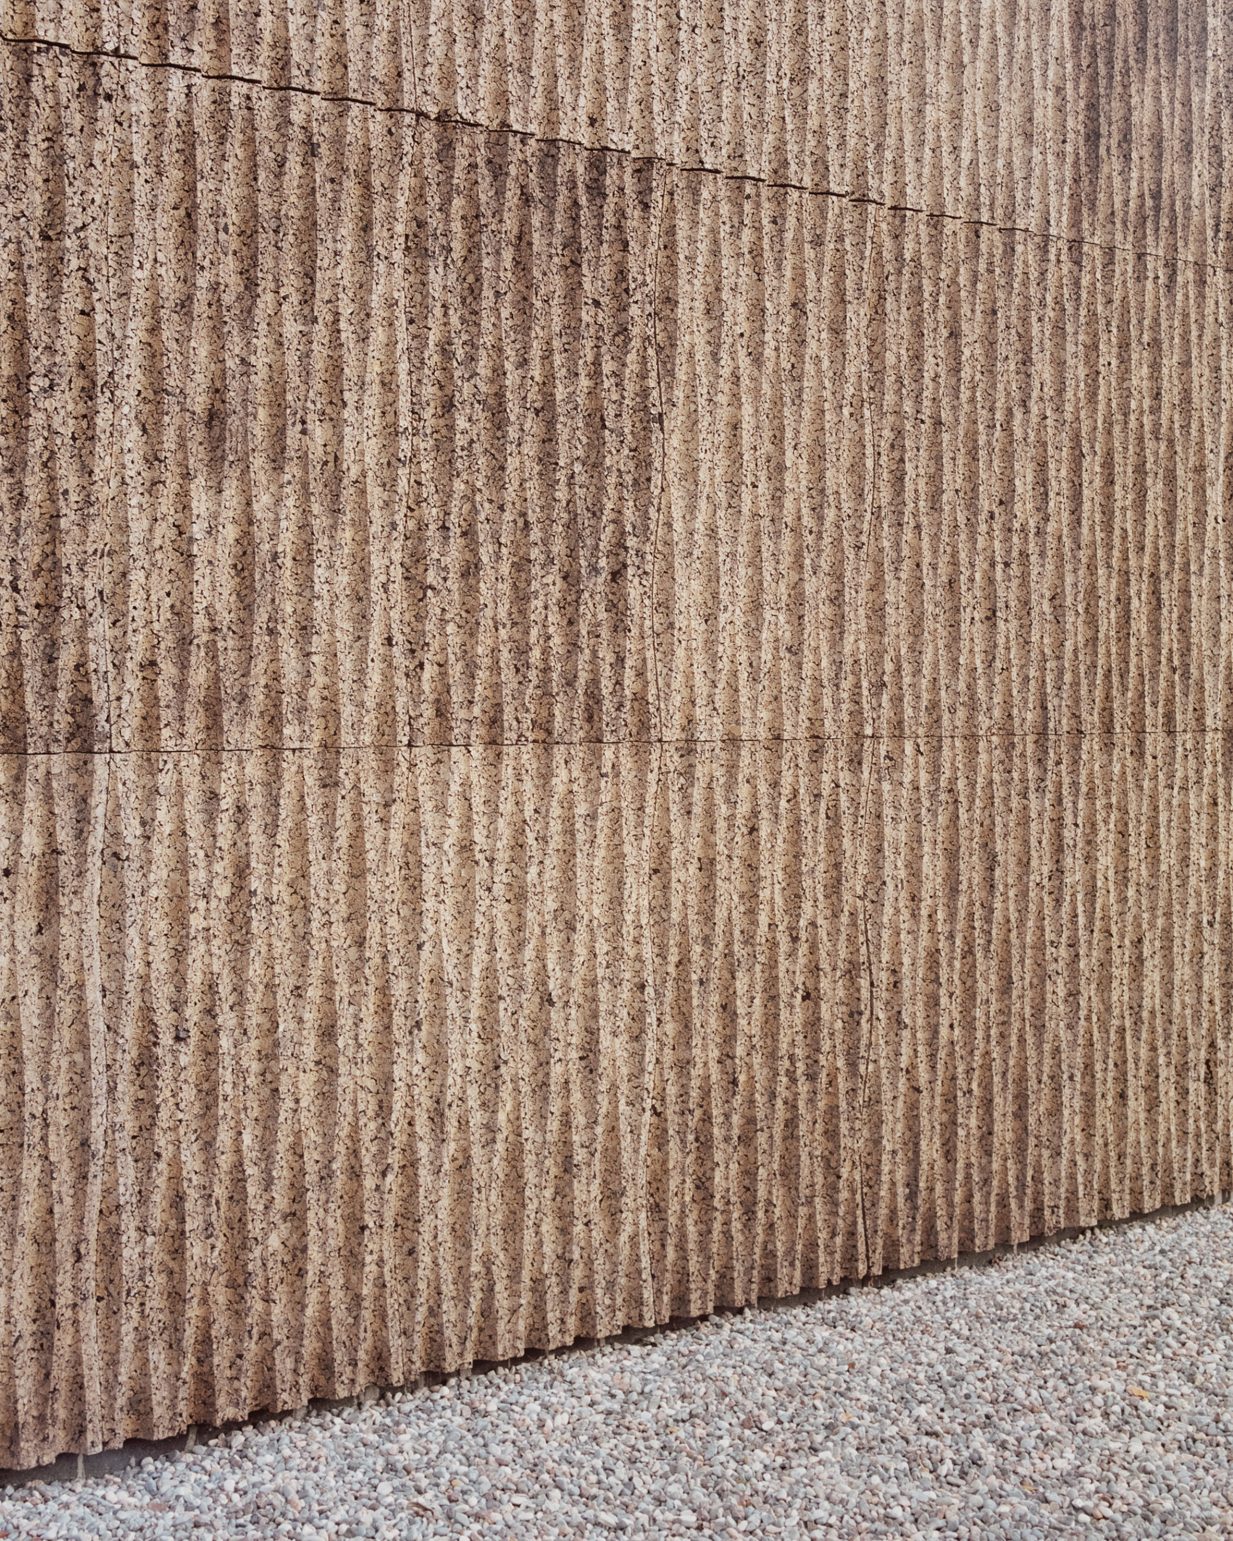 Những nét gợn sóng trên bức tường gỗ chính là một điểm nhấn cho công trình